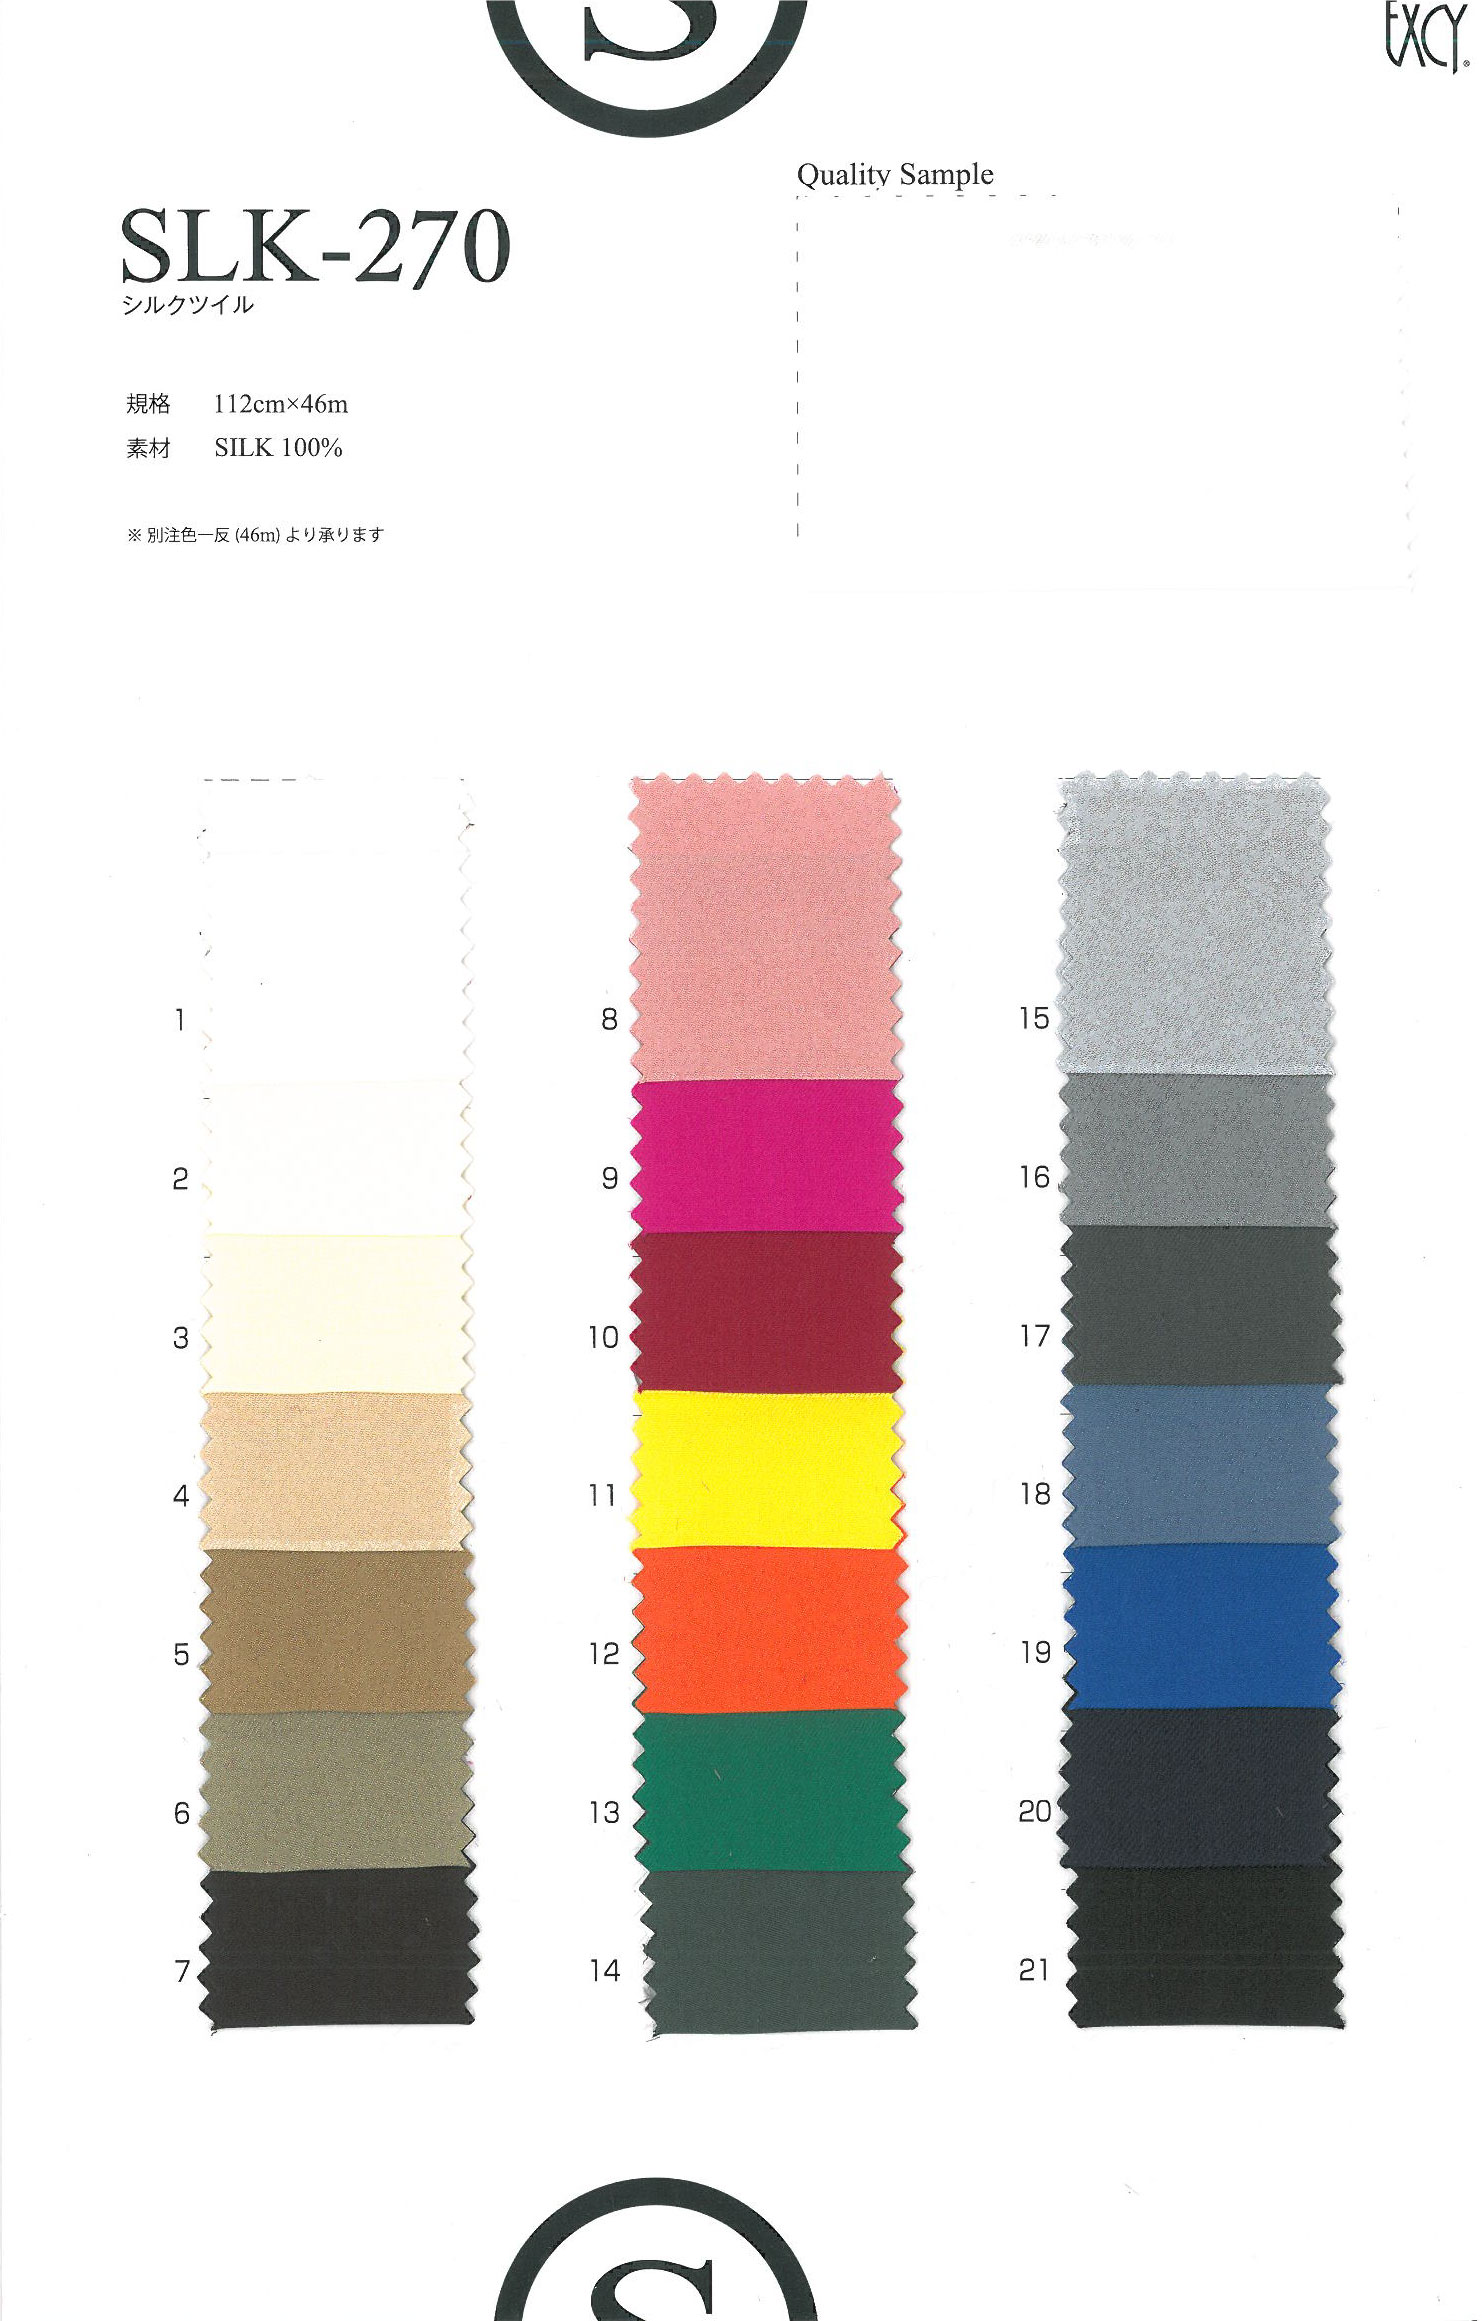 SLK160 本絹サテン16匁 : レディース資材事業部 - 株式会社オークラ